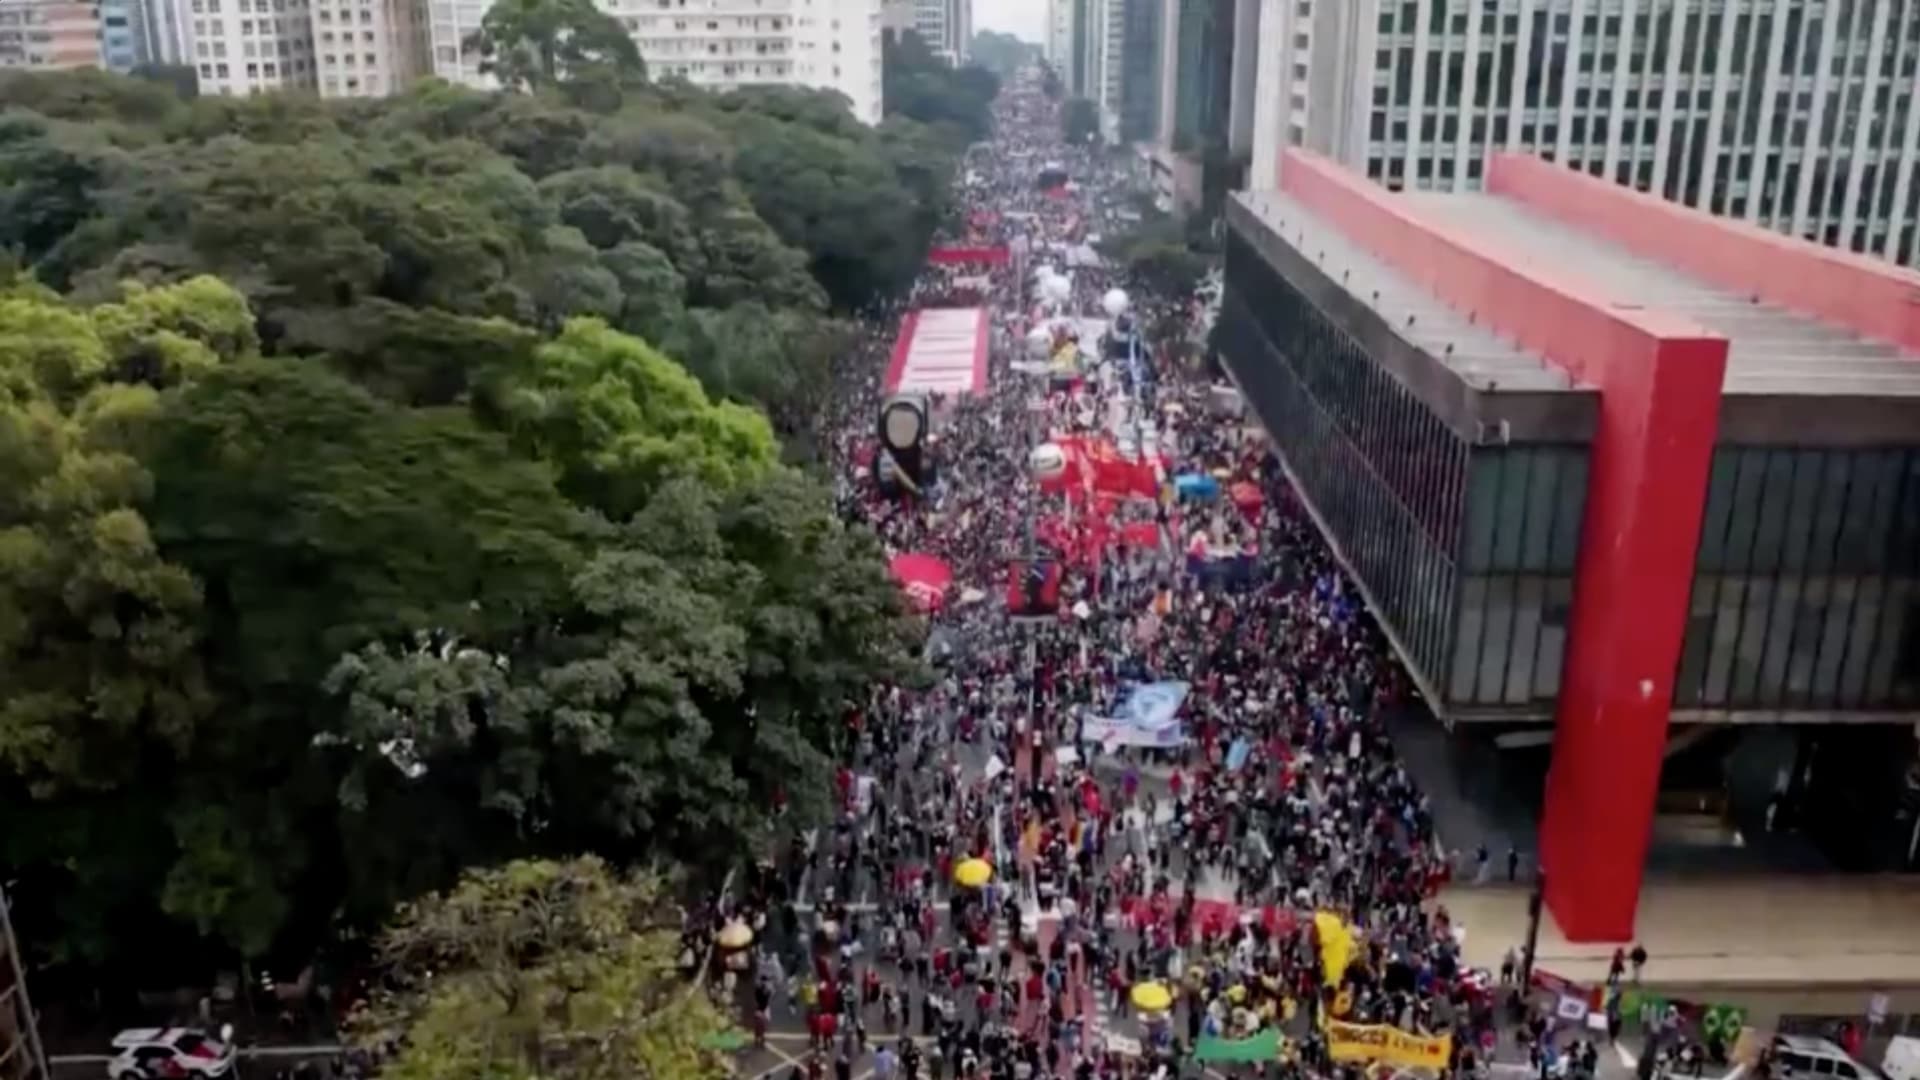 مسيرات في البرازيل تطالب بعزل الرئيس بسبب إدارته لأزمة كورونا